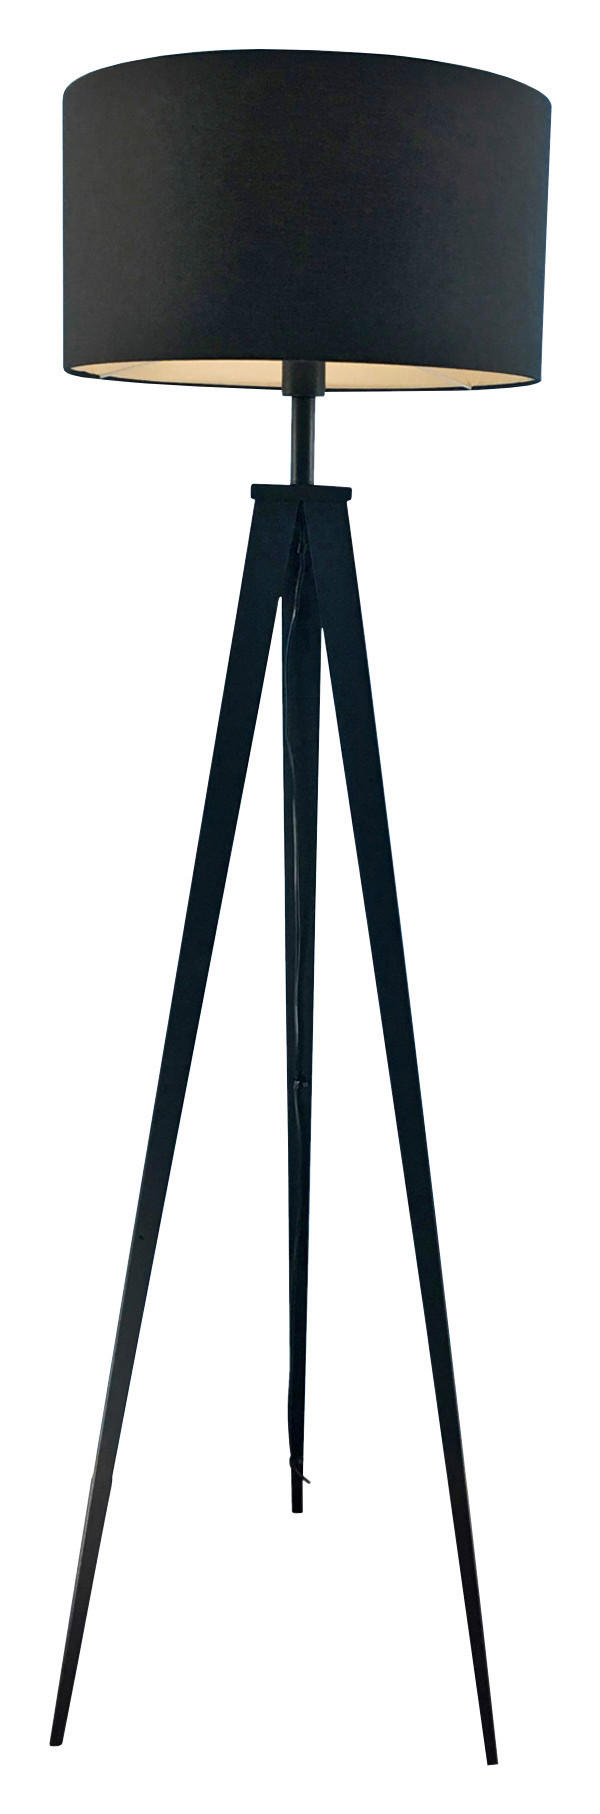 STOJACIA LAMPA, 49/158 cm  - čierna, Lifestyle, kov/textil (49/158cm) - Ambiente